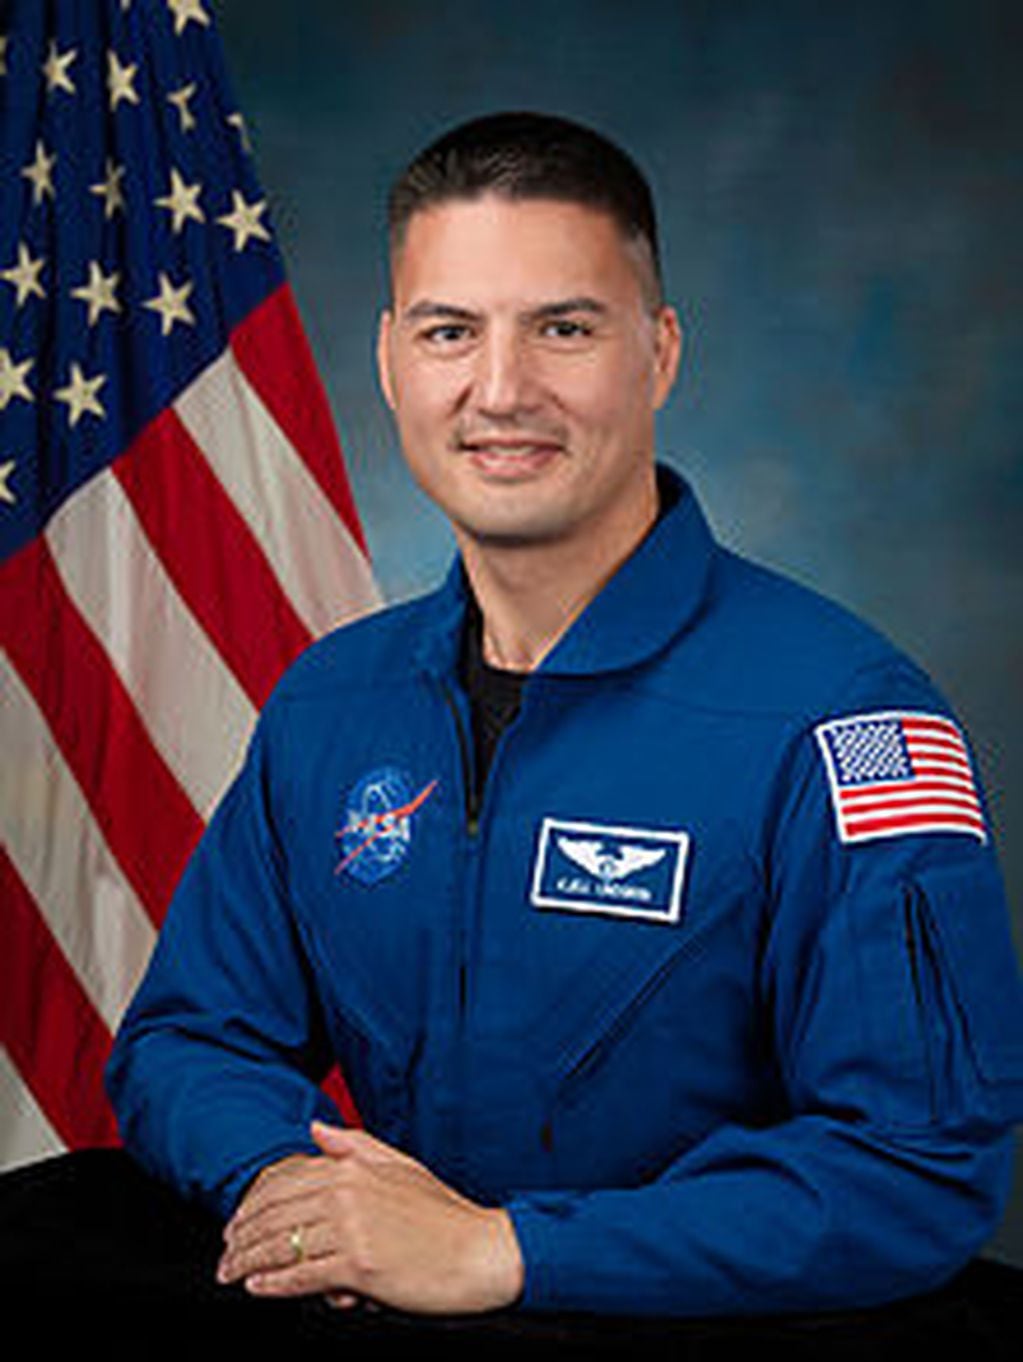 Kjell Norwood Lindgren es el astronauta que se va a comunicar con los alumnos antárticos. Es estadounidense y fue seleccionado en junio de 2009 como miembro del Grupo de los 20 astronautas de la NASA.